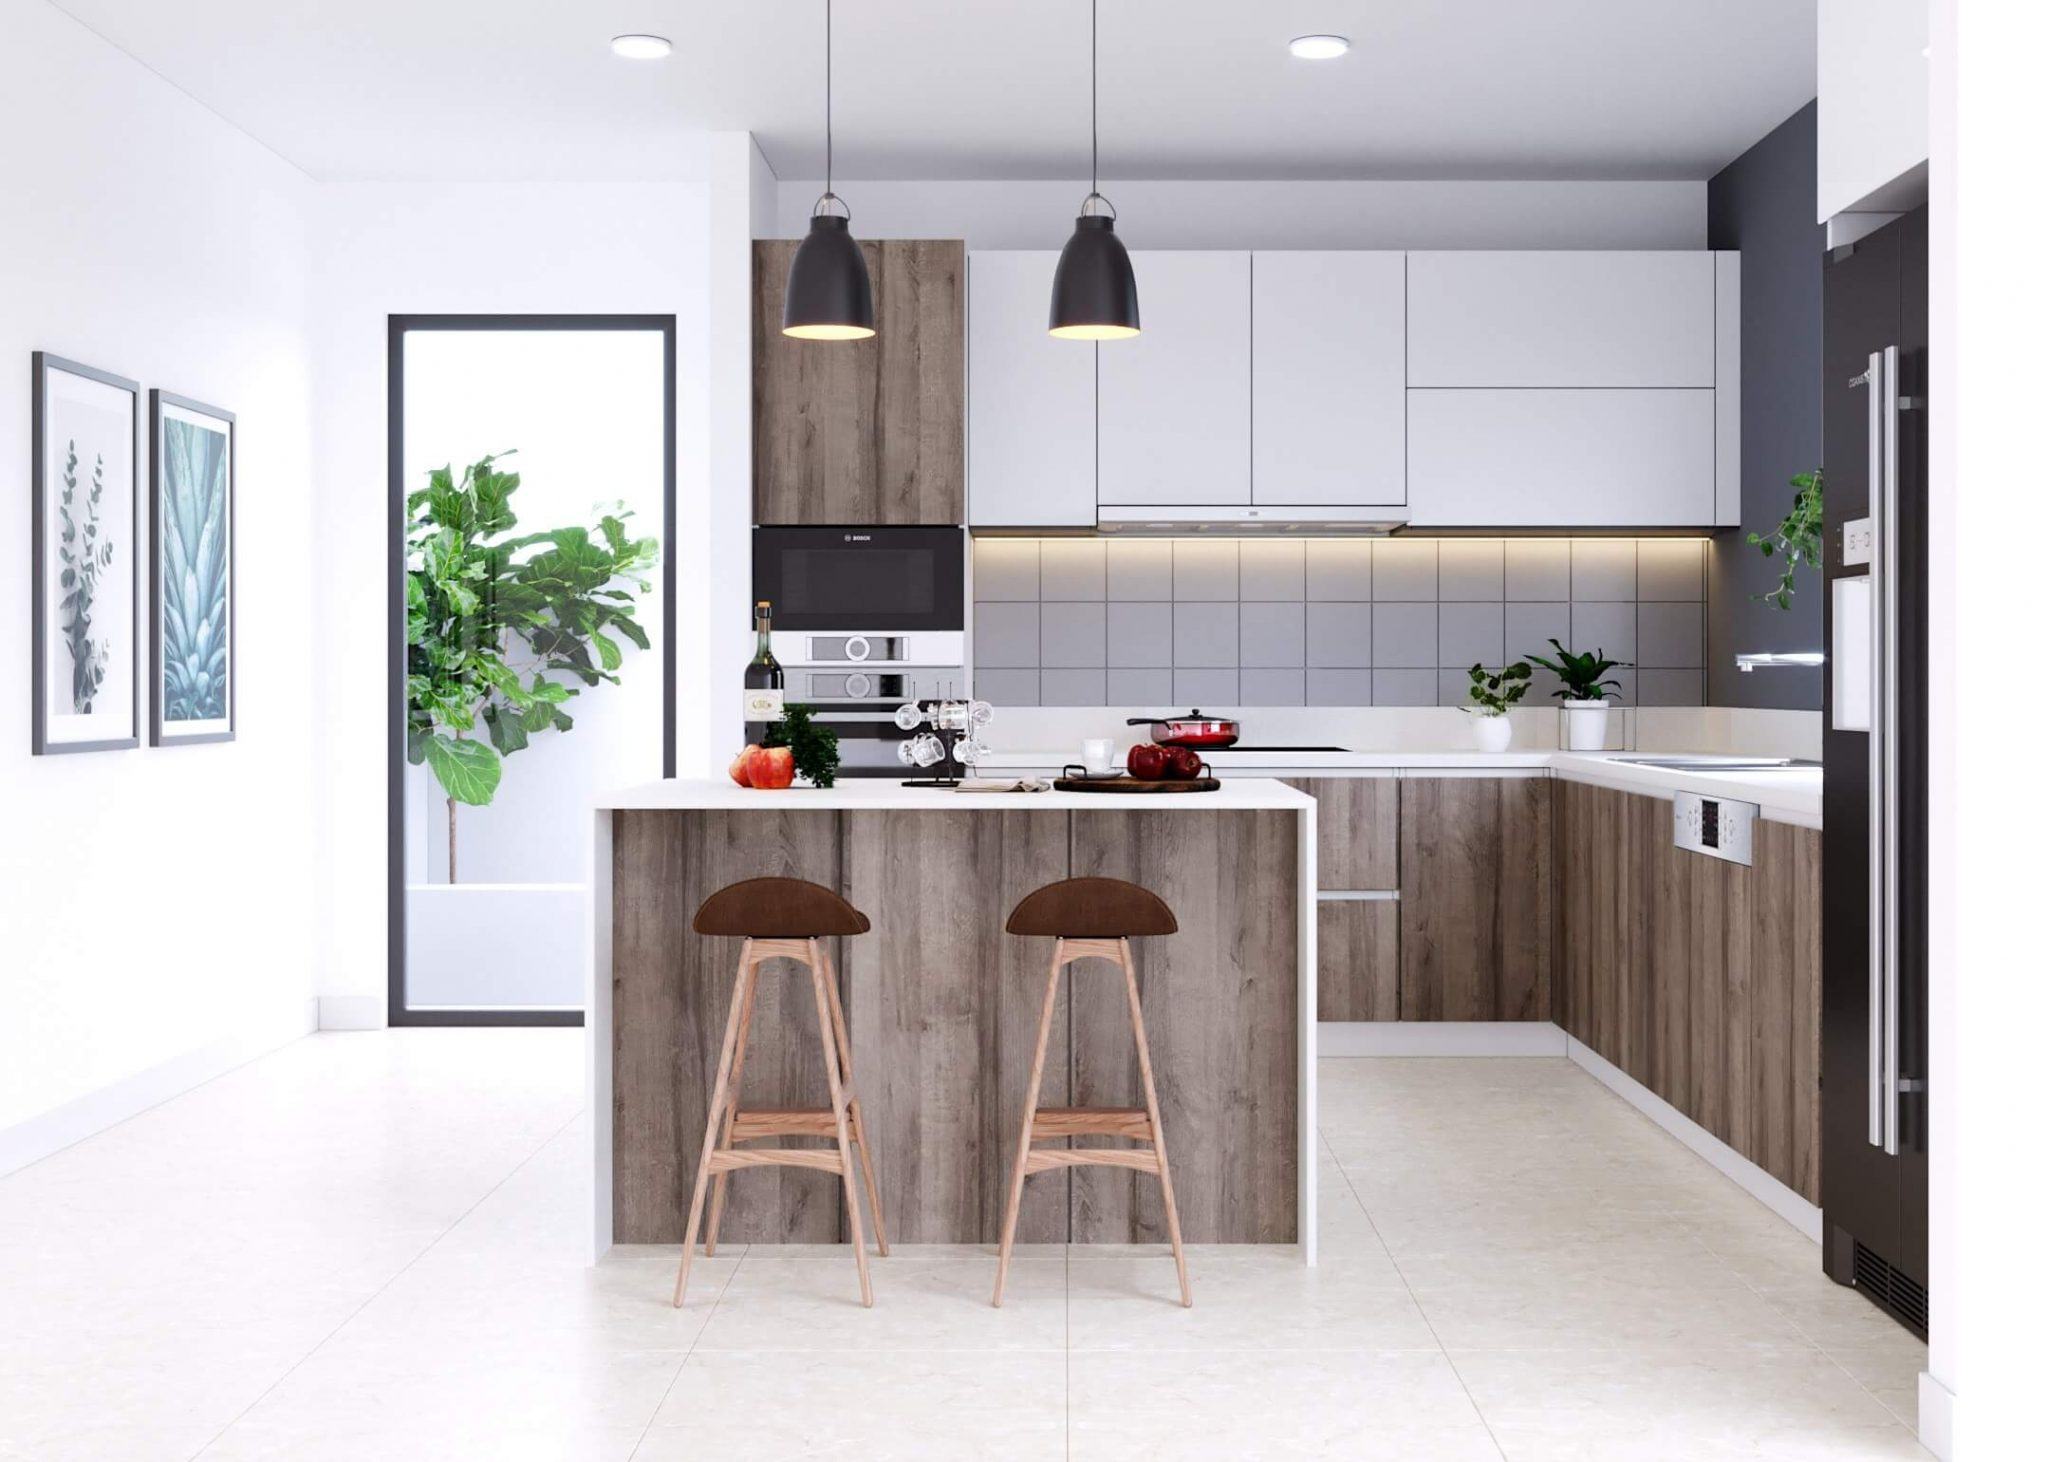 Phòng bếp - nơi cung cấp năng lượng cho mỗi thành viên trong gia đình. Thiết kế nội thất phòng bếp đơn giản giúp tối đa hóa không gian, mang lại sự thoải mái cho người sử dụng. Chỉ cần một vài chi tiết nhỏ nhưng lại đậm chất hiện đại, cùng nhau tạo nên không gian bếp ấm cúng thông qua những hình ảnh thiết kế nội thất phòng bếp đơn giản.